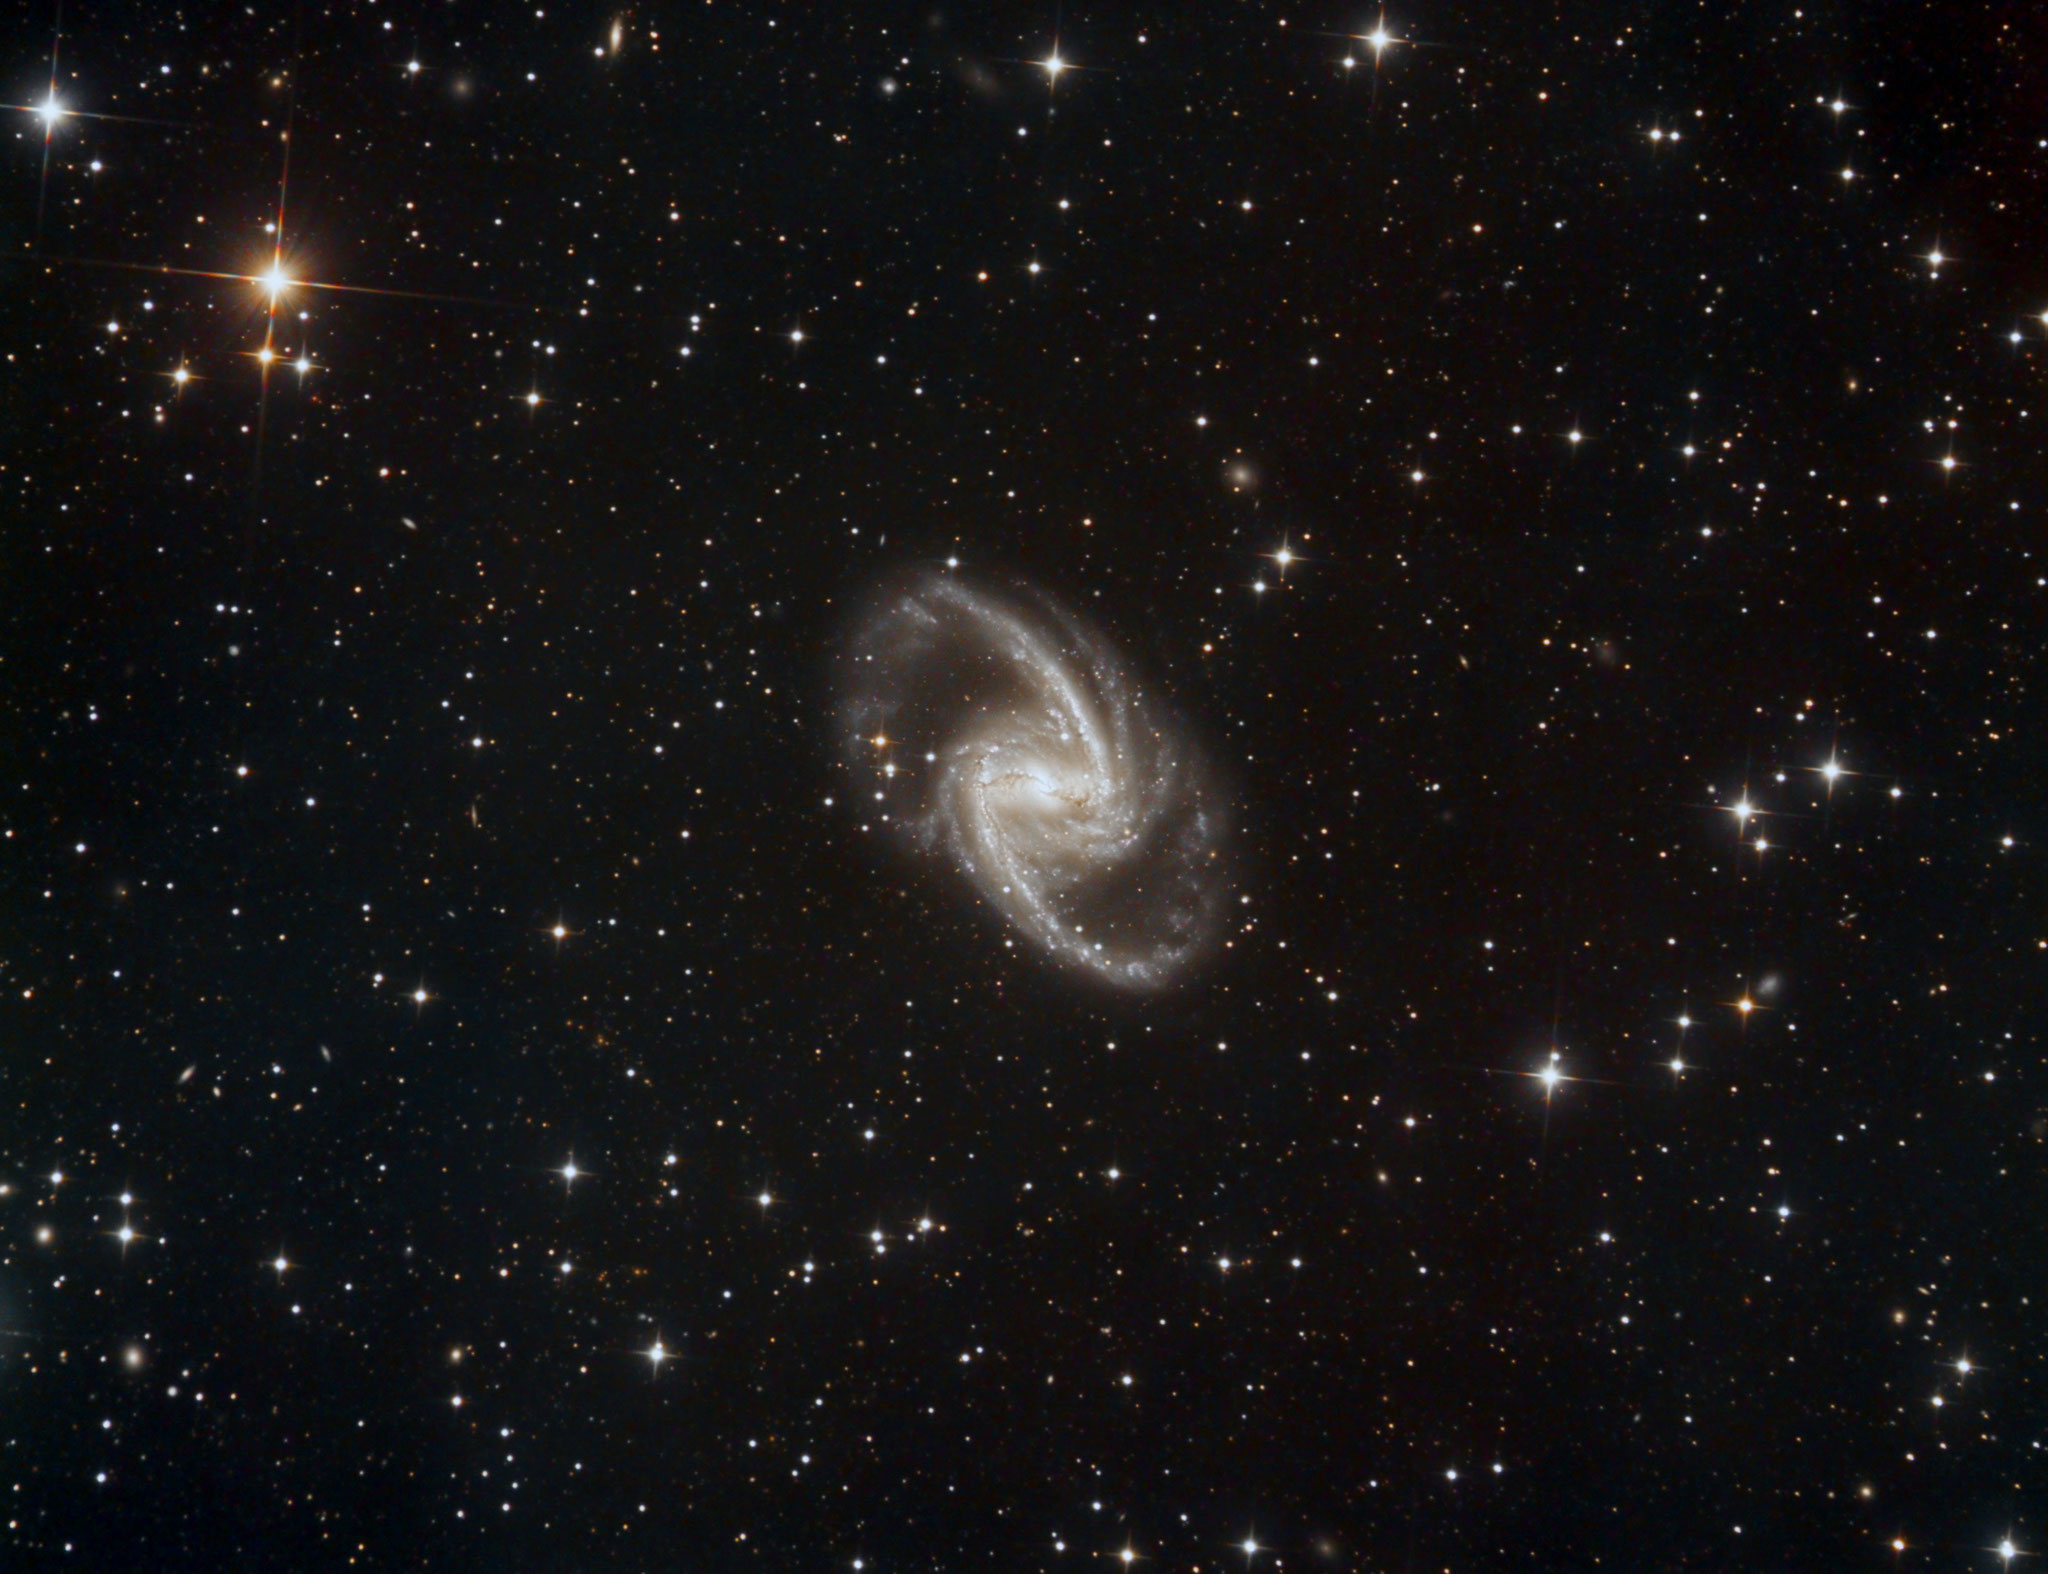 NGC 1365 à 56 millions d'al dans la constellation du Fourneau. diamètre 200 000 al, 2 fois plus grande que notre Galaxie, T355, Janvier 2019